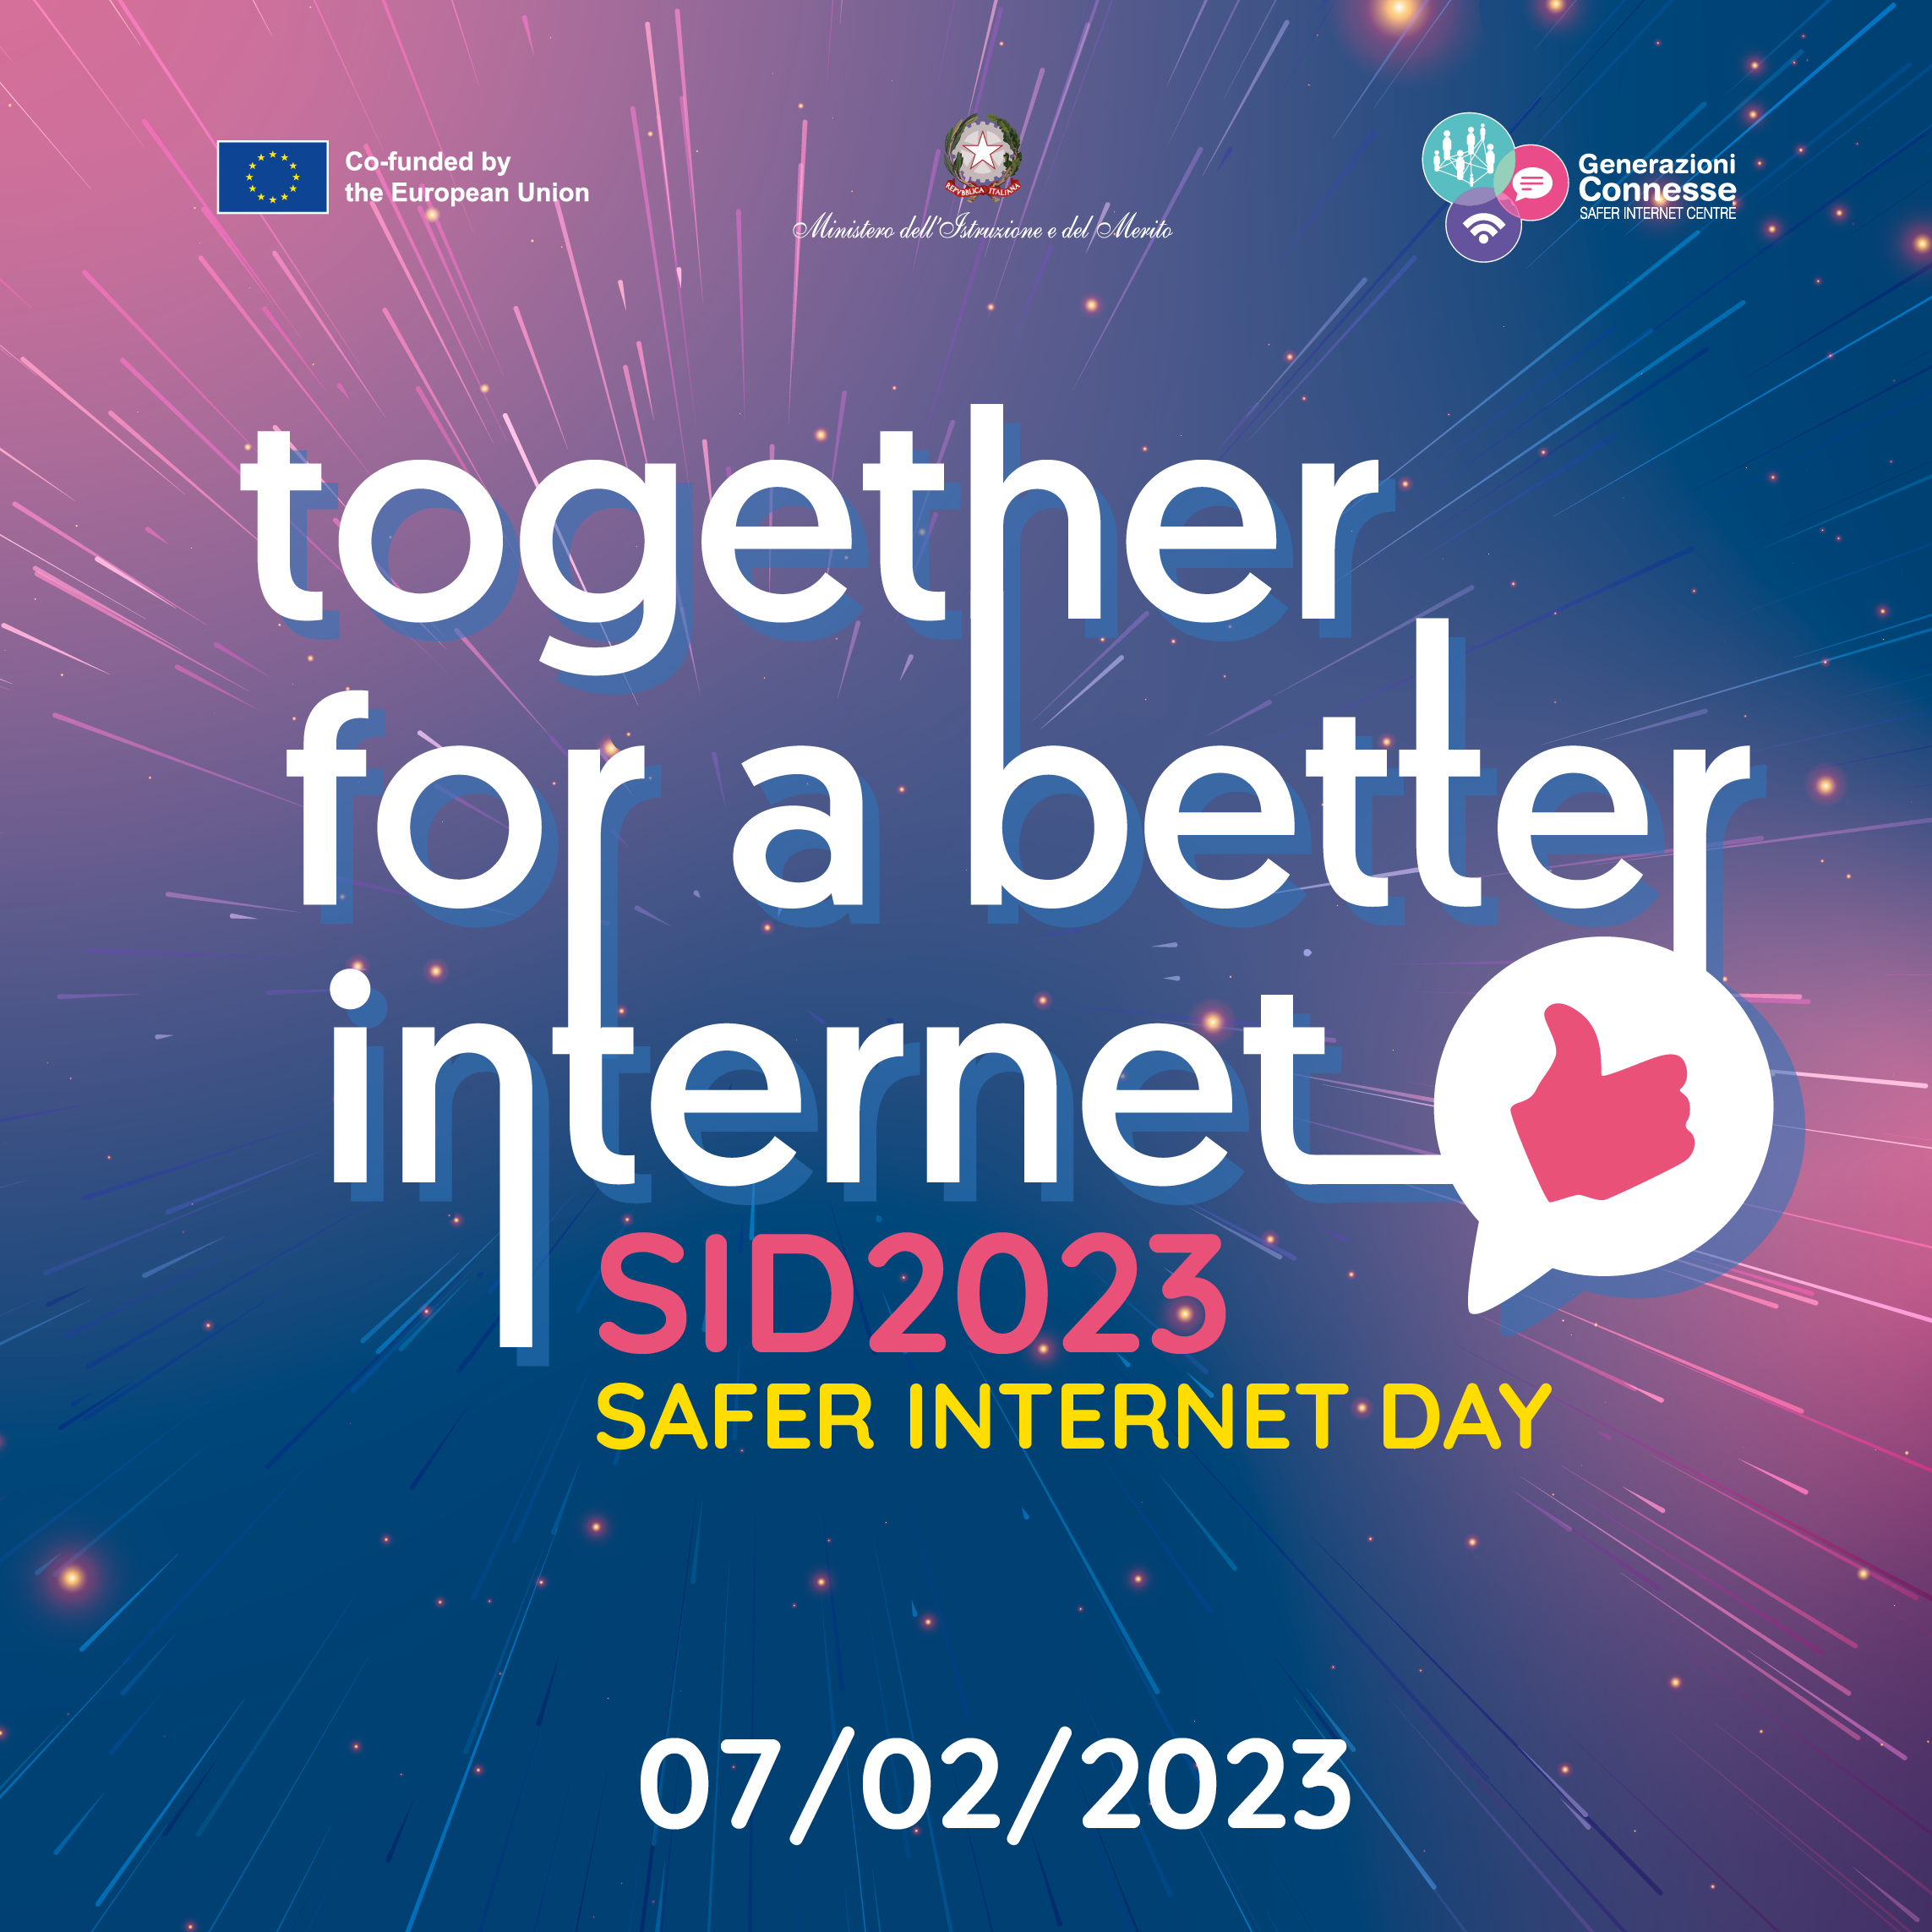 SID - Safer Internet Day 2023